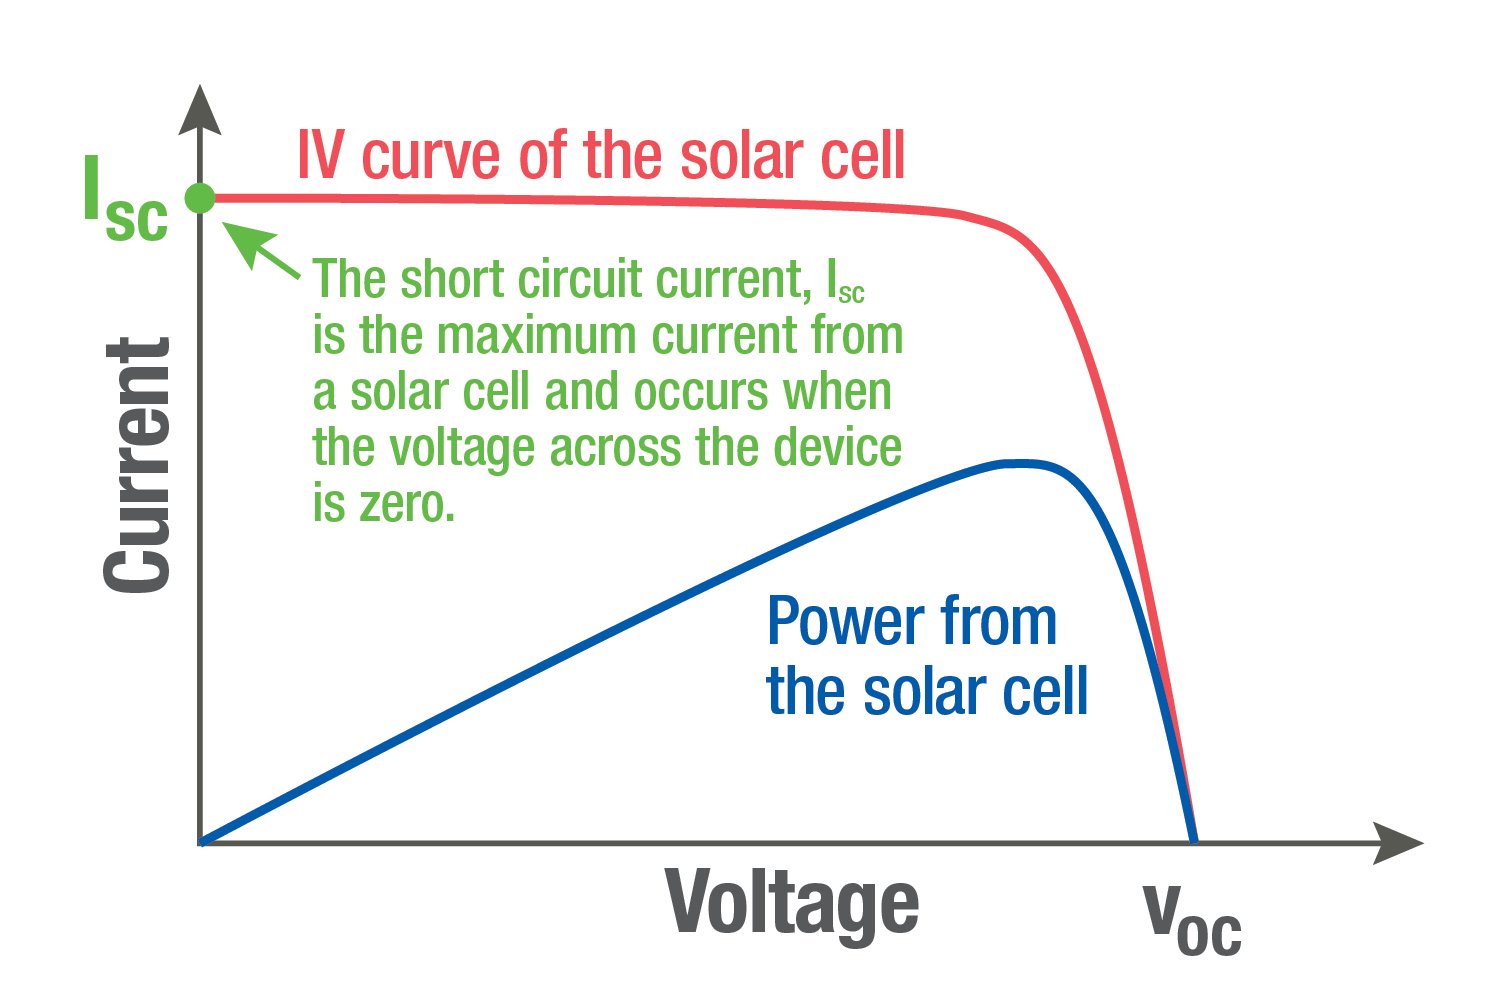 太阳能电池的 IV 曲线与功率对比图